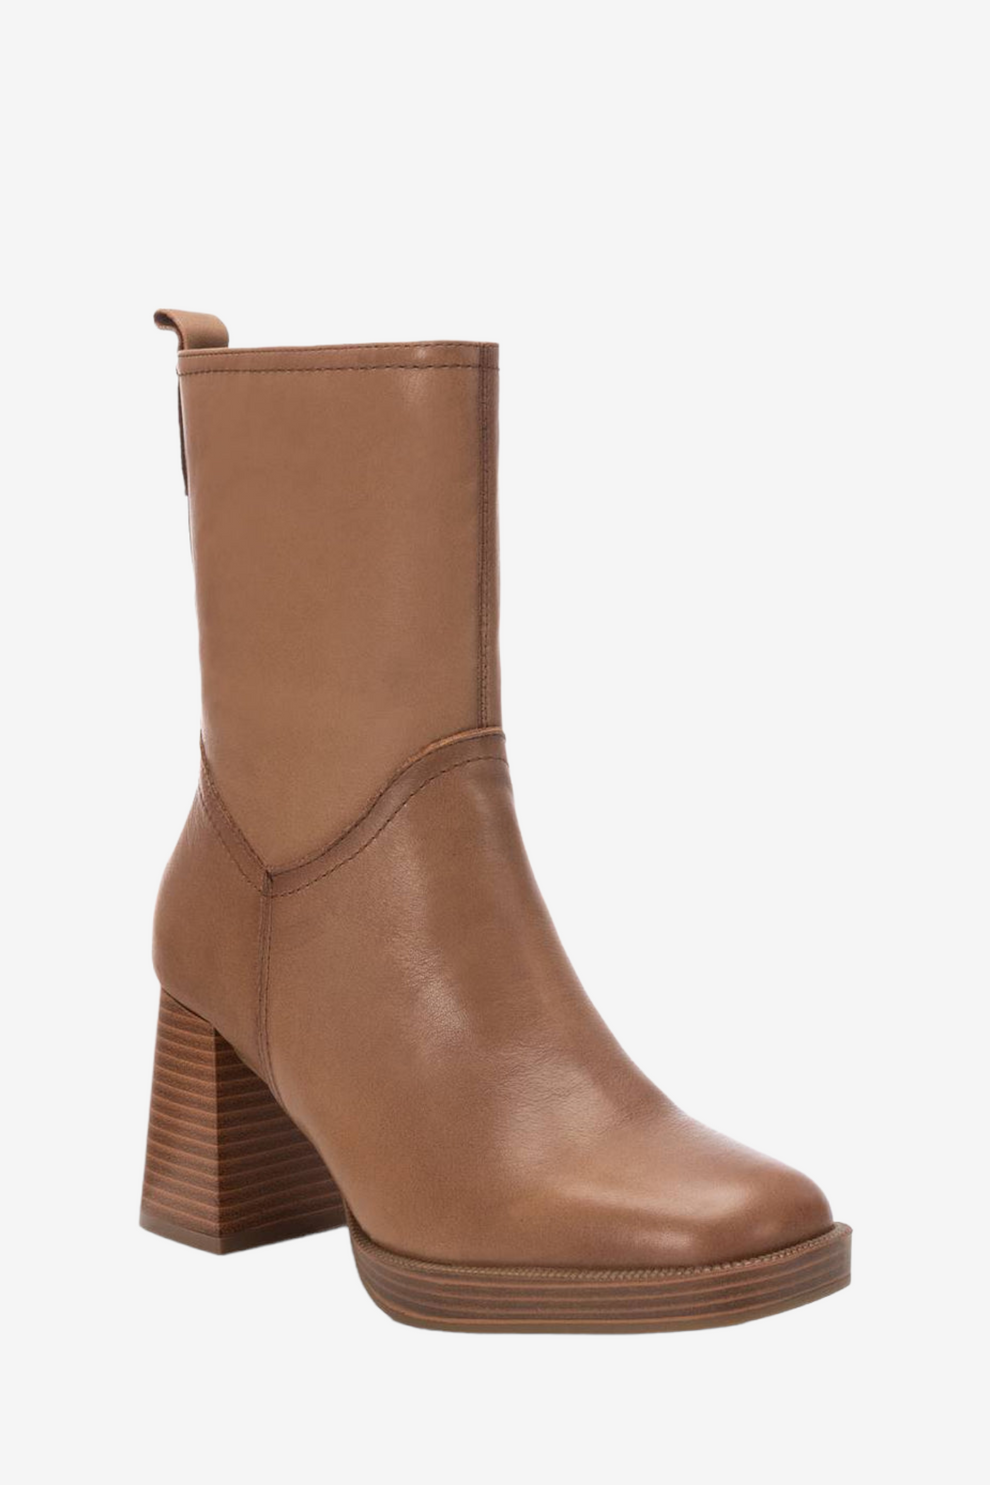 Carmela Taupe Leather Boot 161205